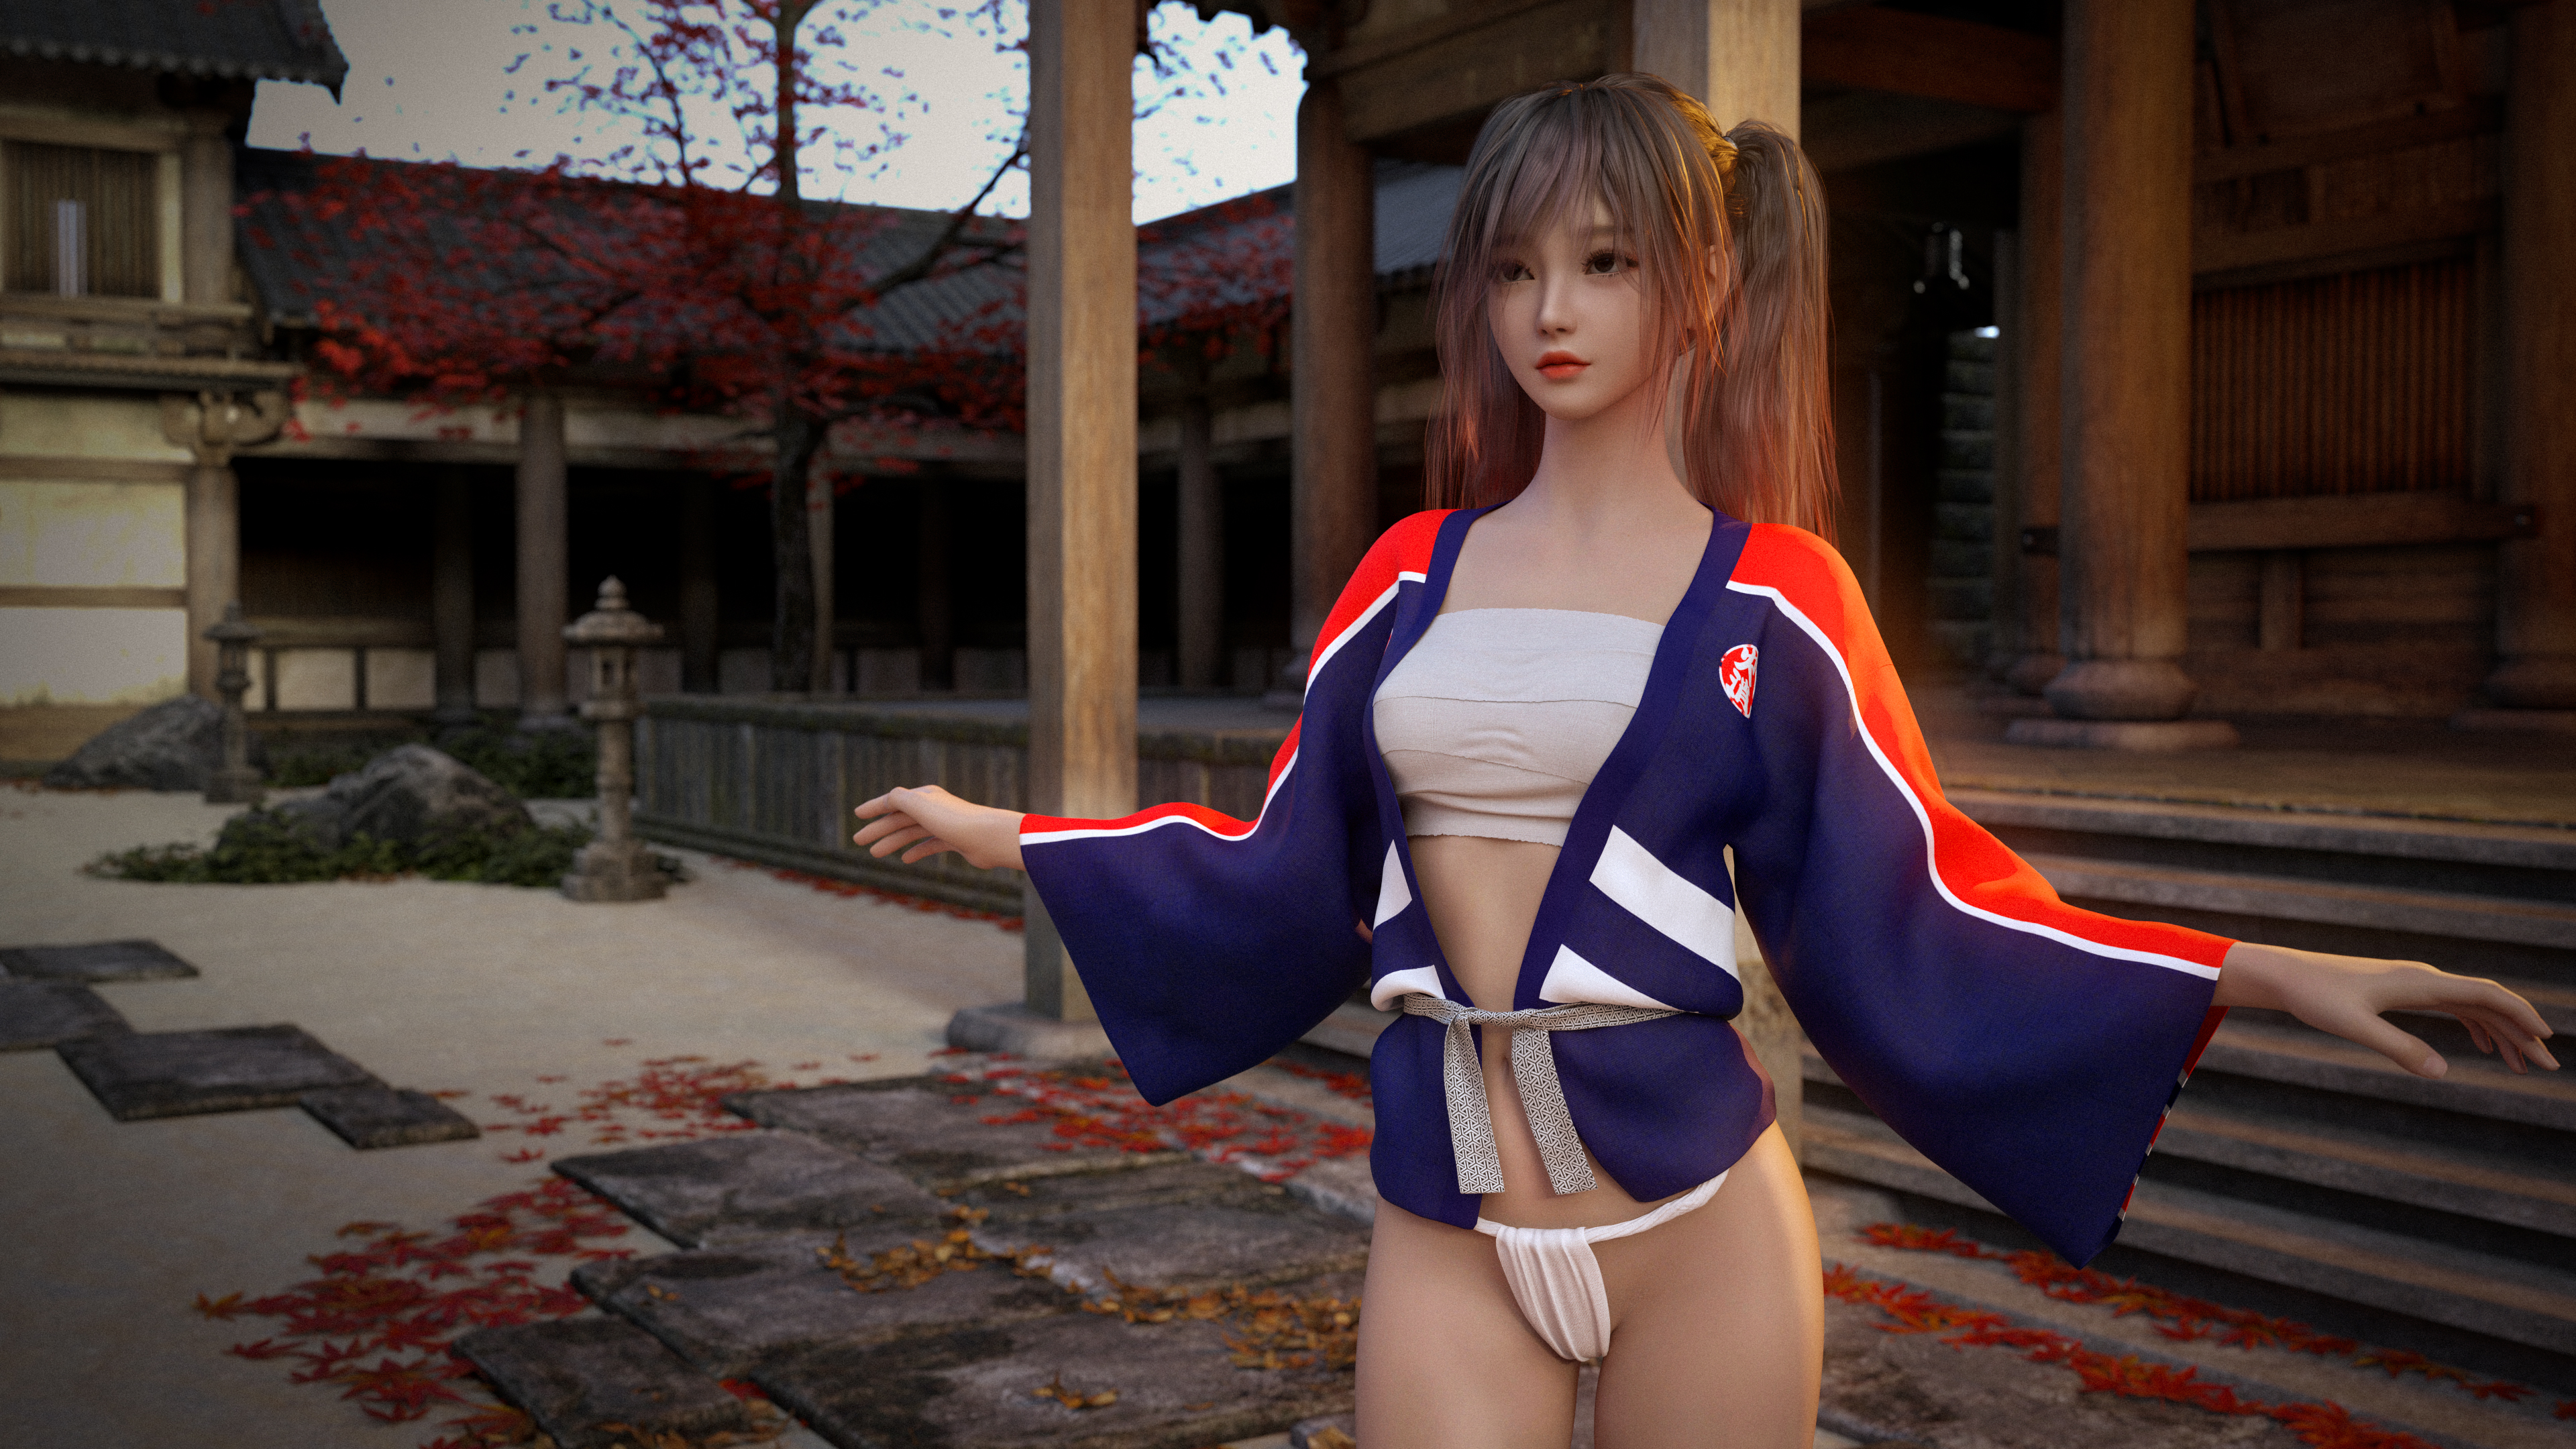 General 3840x2160 CGI fantasy girl skimpy clothes fundoshi sarashi digital art